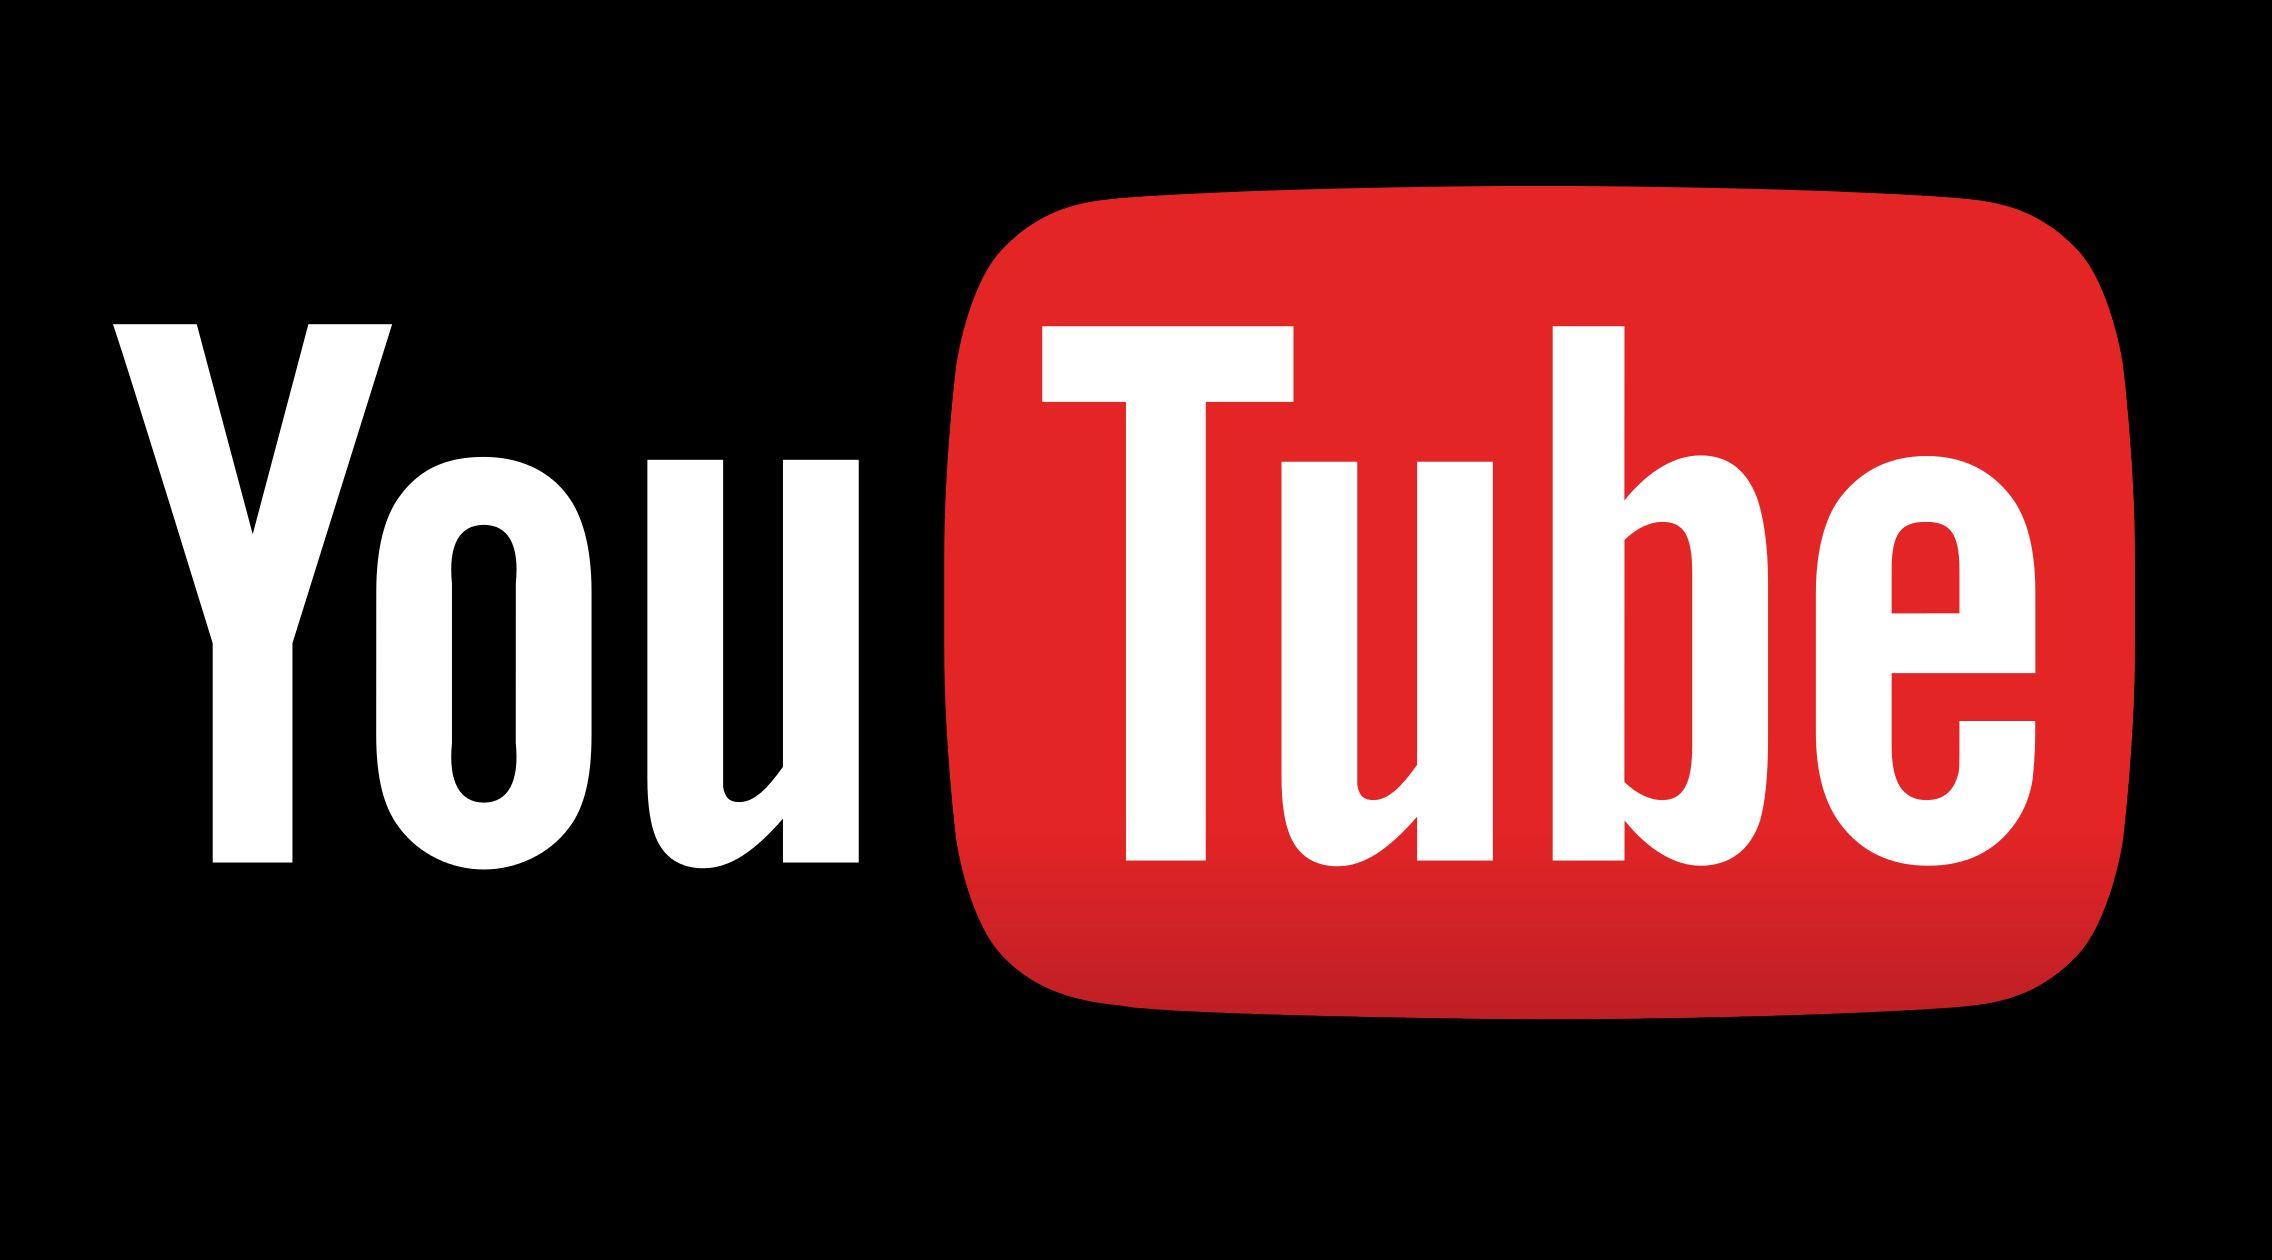 YouTube Black Logo - YouTube Logo, YouTube Symbol, Meaning, History and Evolution